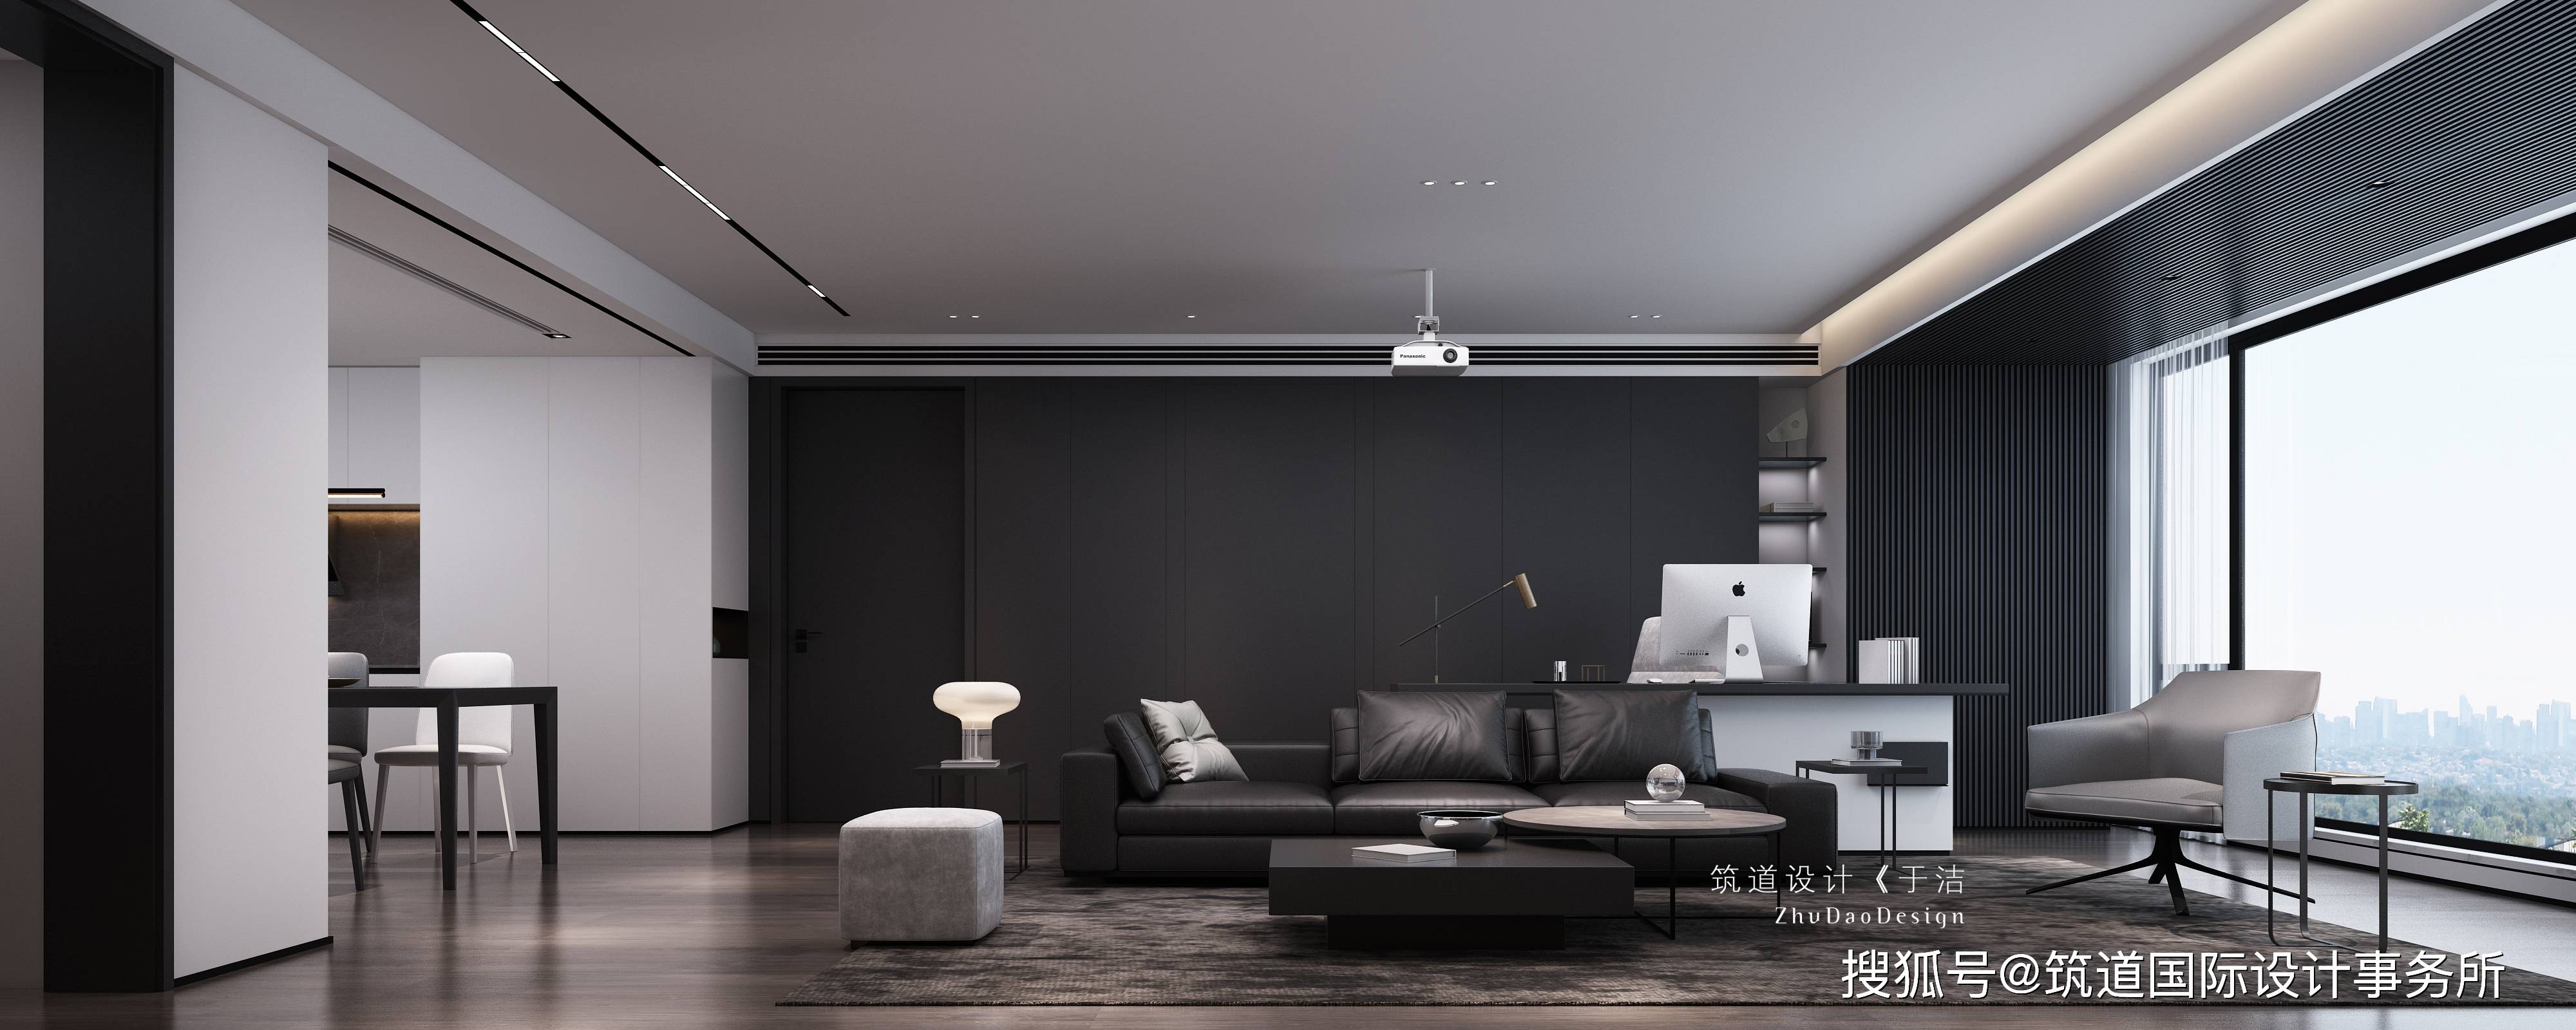 黑白灰的后现代简约风格客厅是当下很受人们欢迎的一种设计搭配,或白